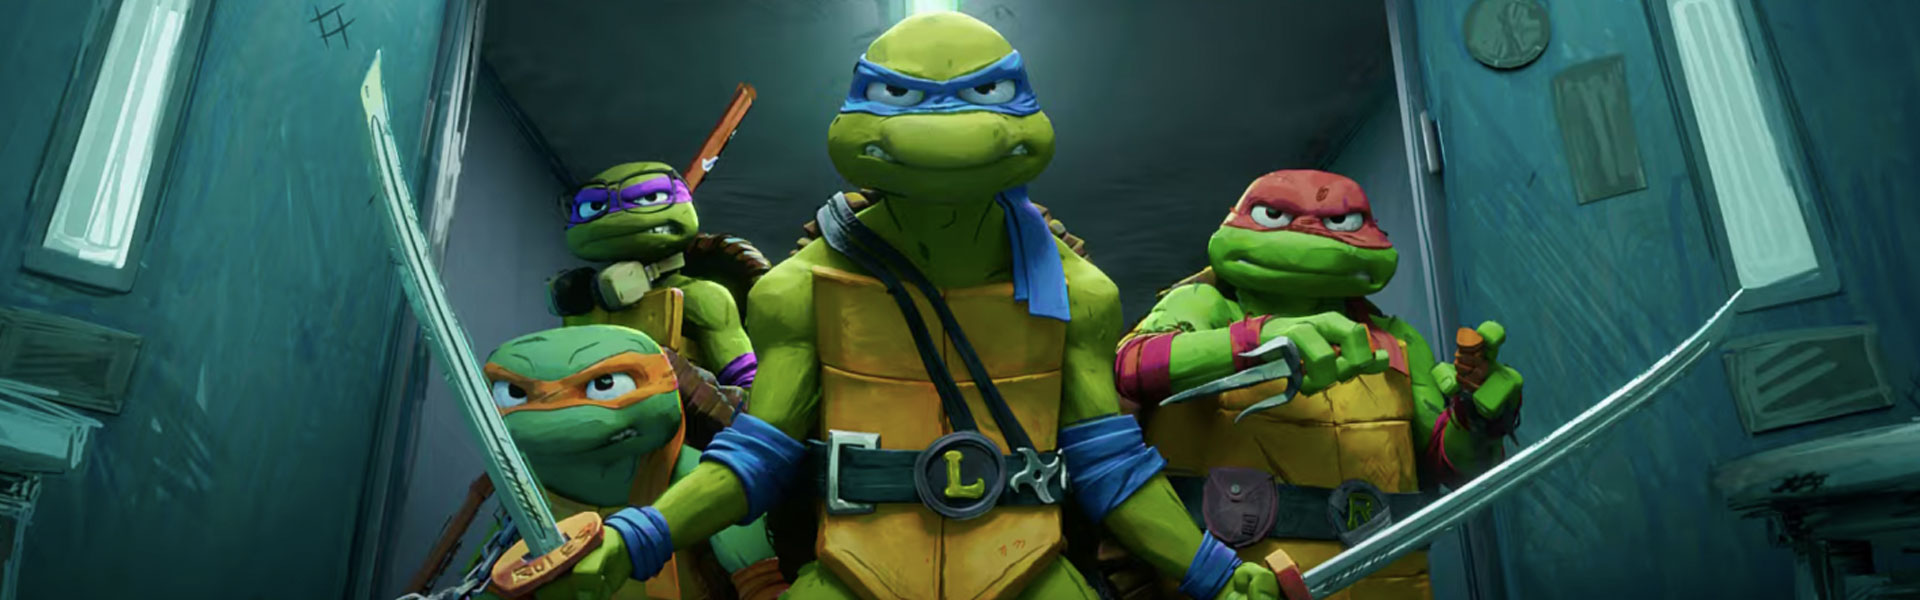 Crítica de ‘Tortugas Ninja: Caos mutante’: Chamacos mensos